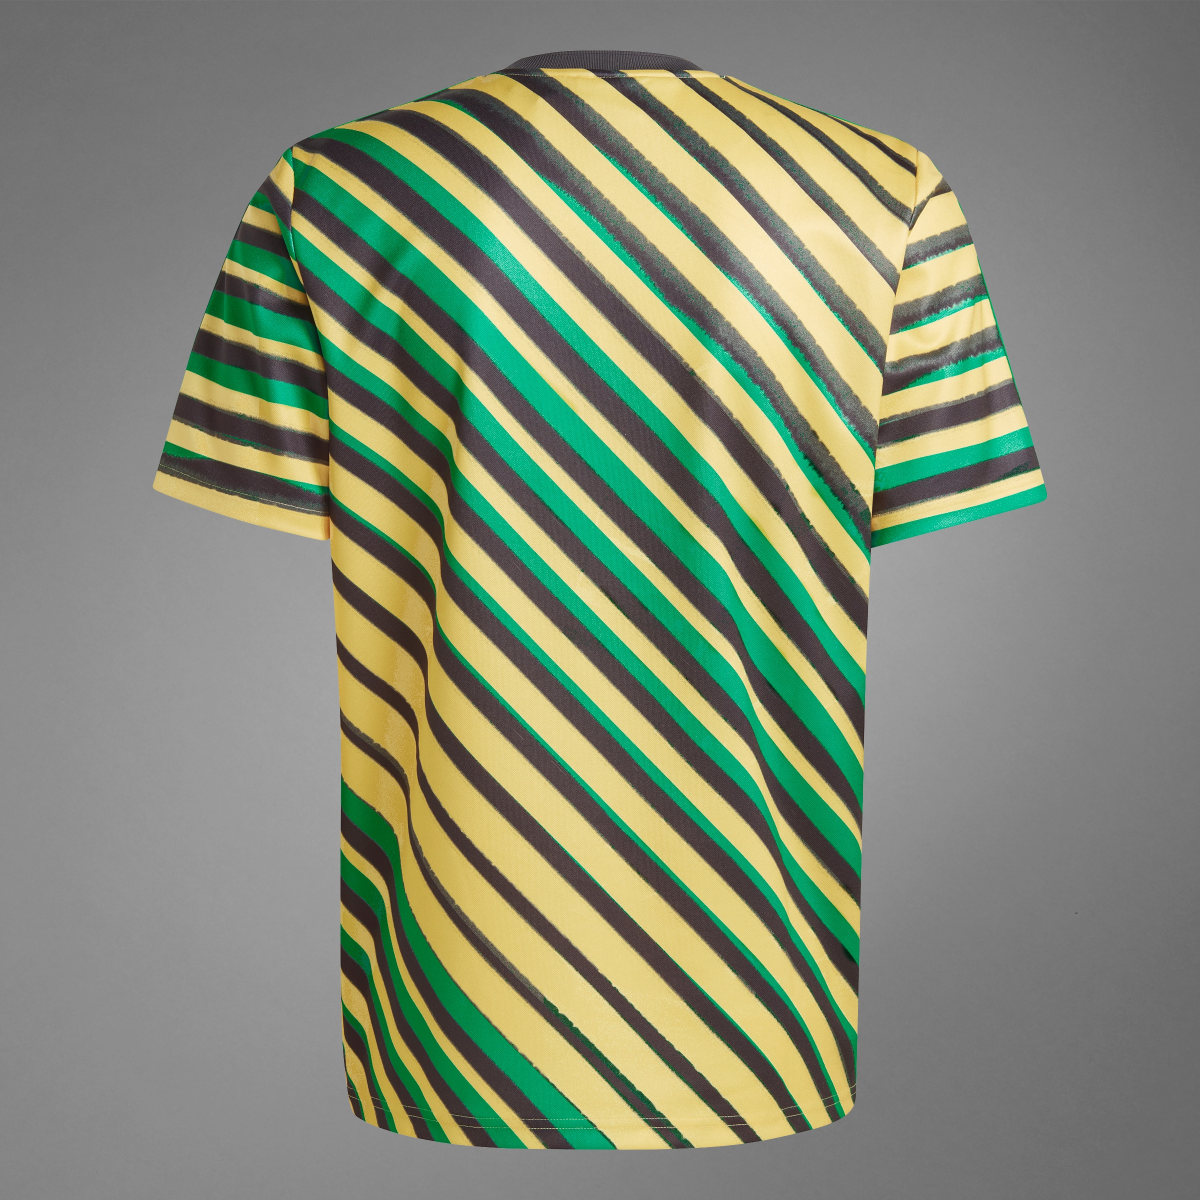 Adidas Camiseta Trefoil Jamaica. 11